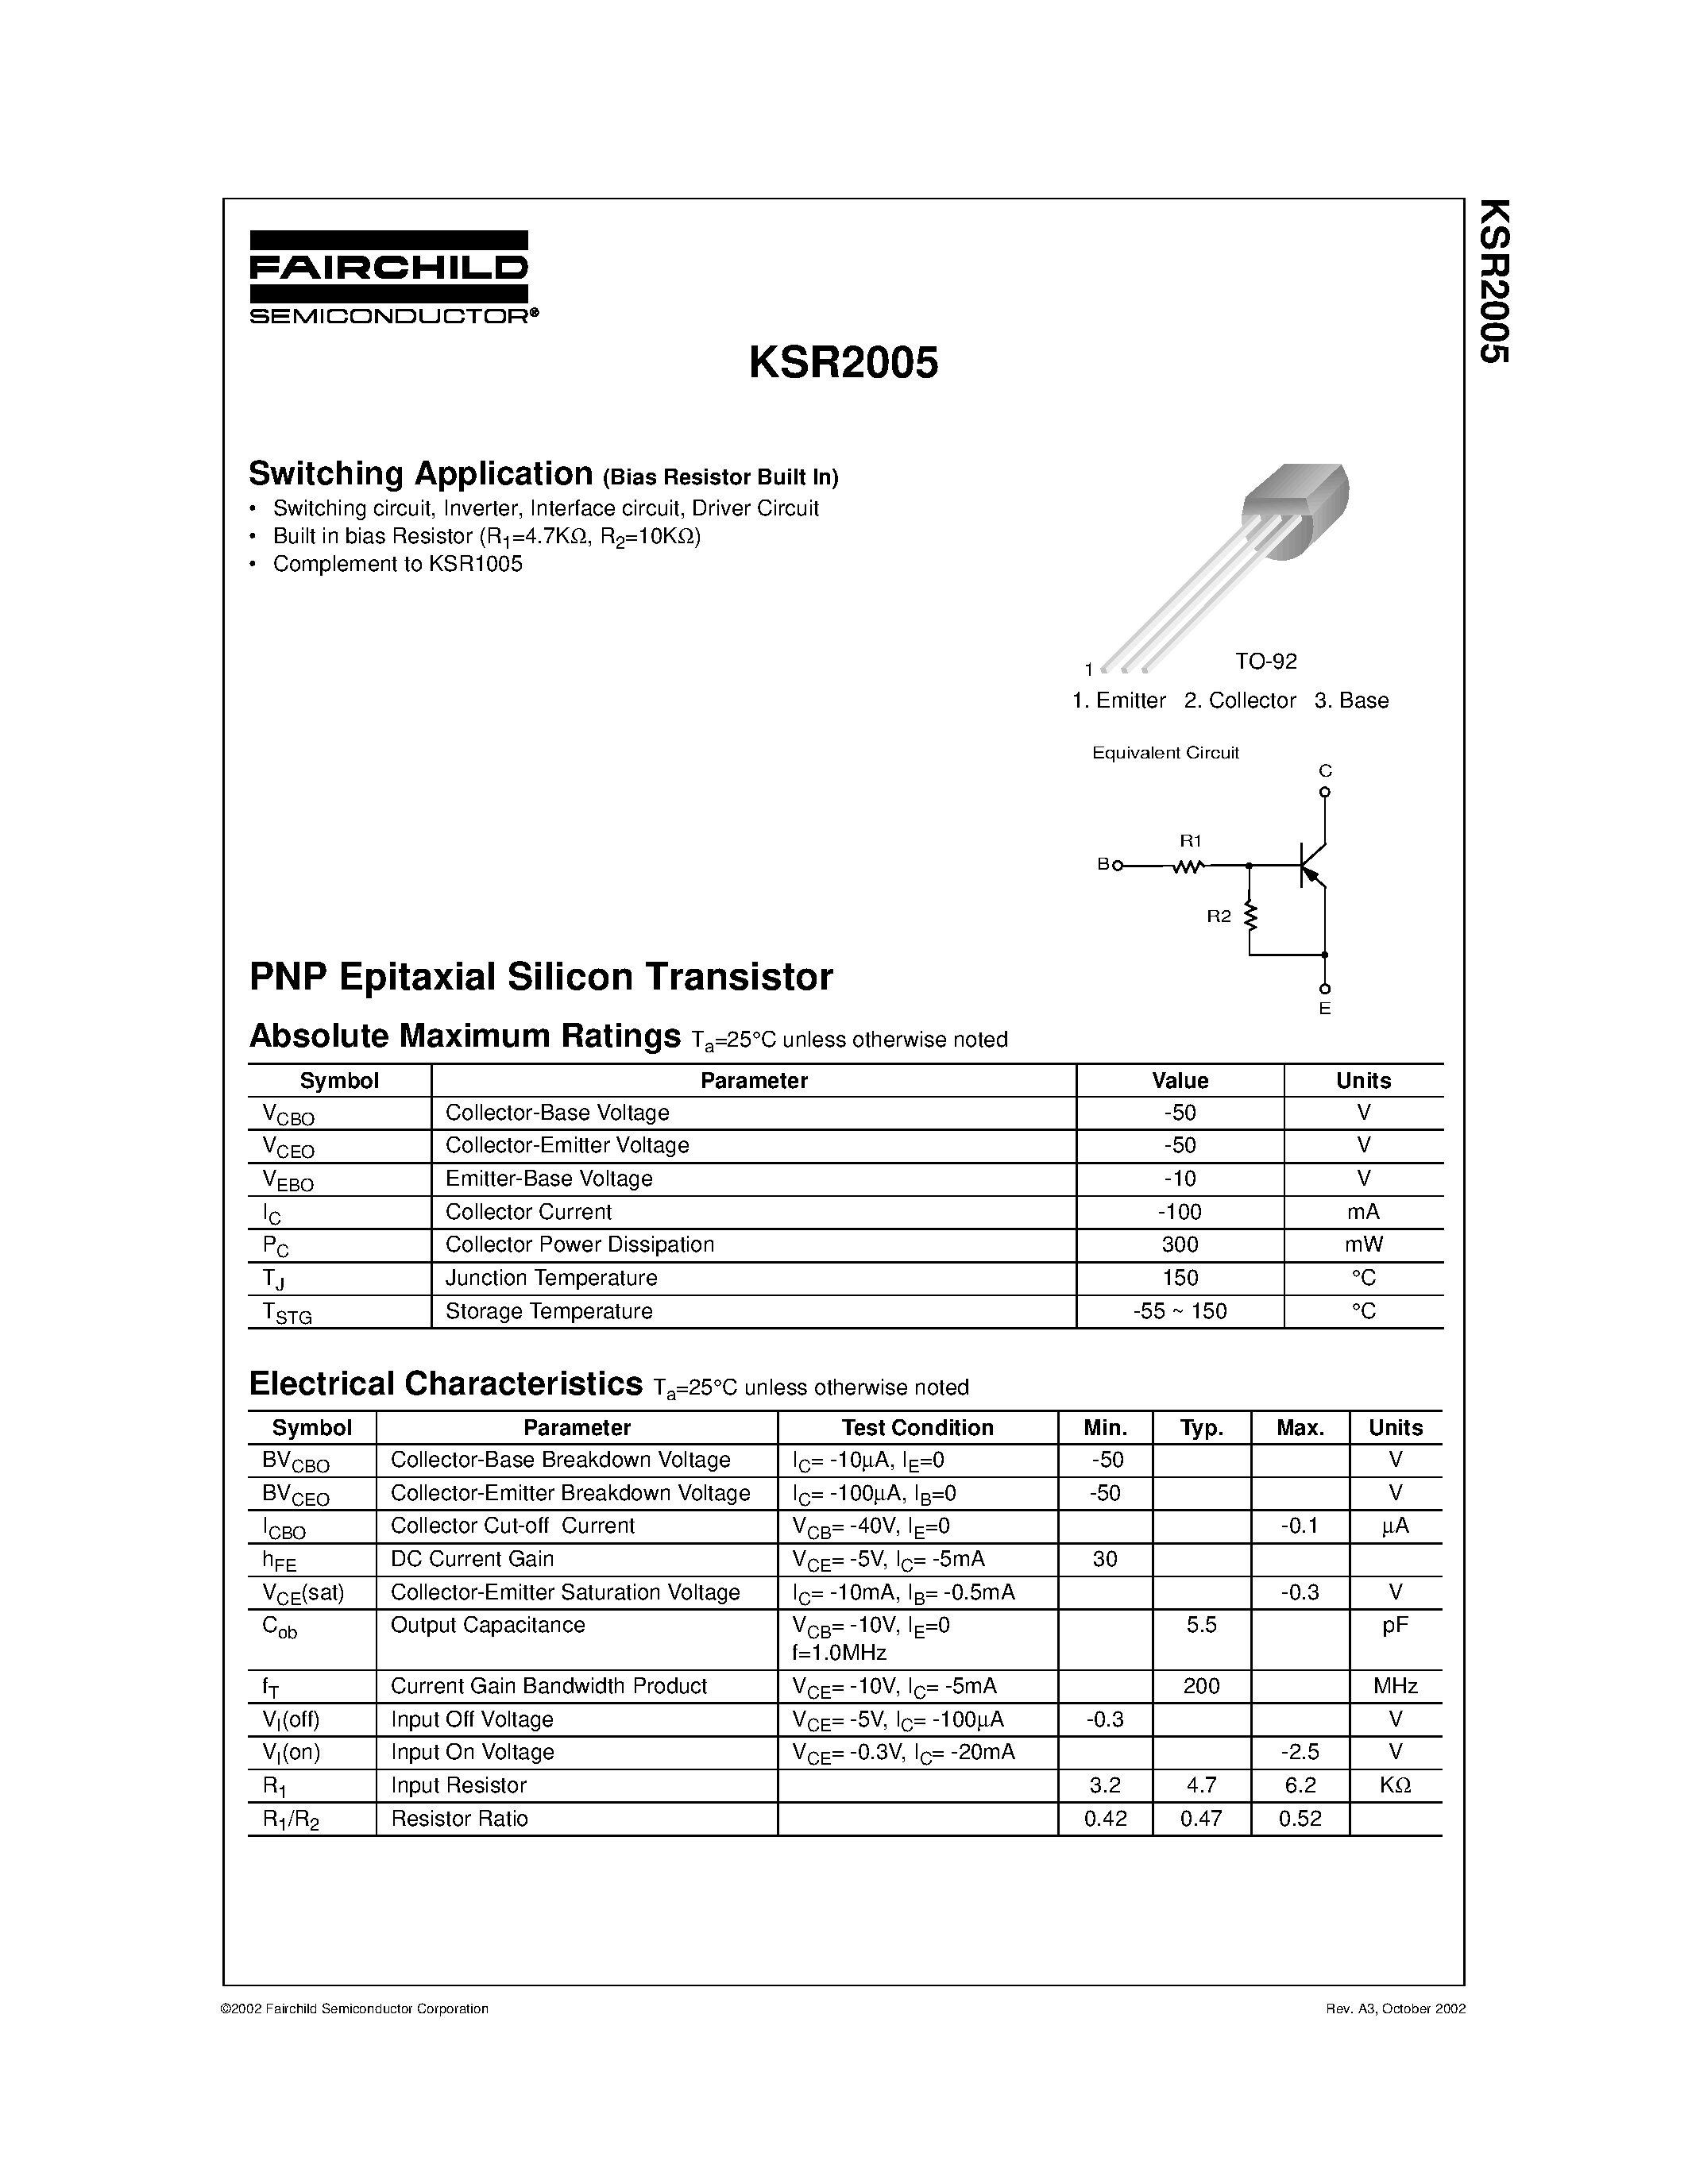 Даташит KSR2005 - Switching Application страница 1